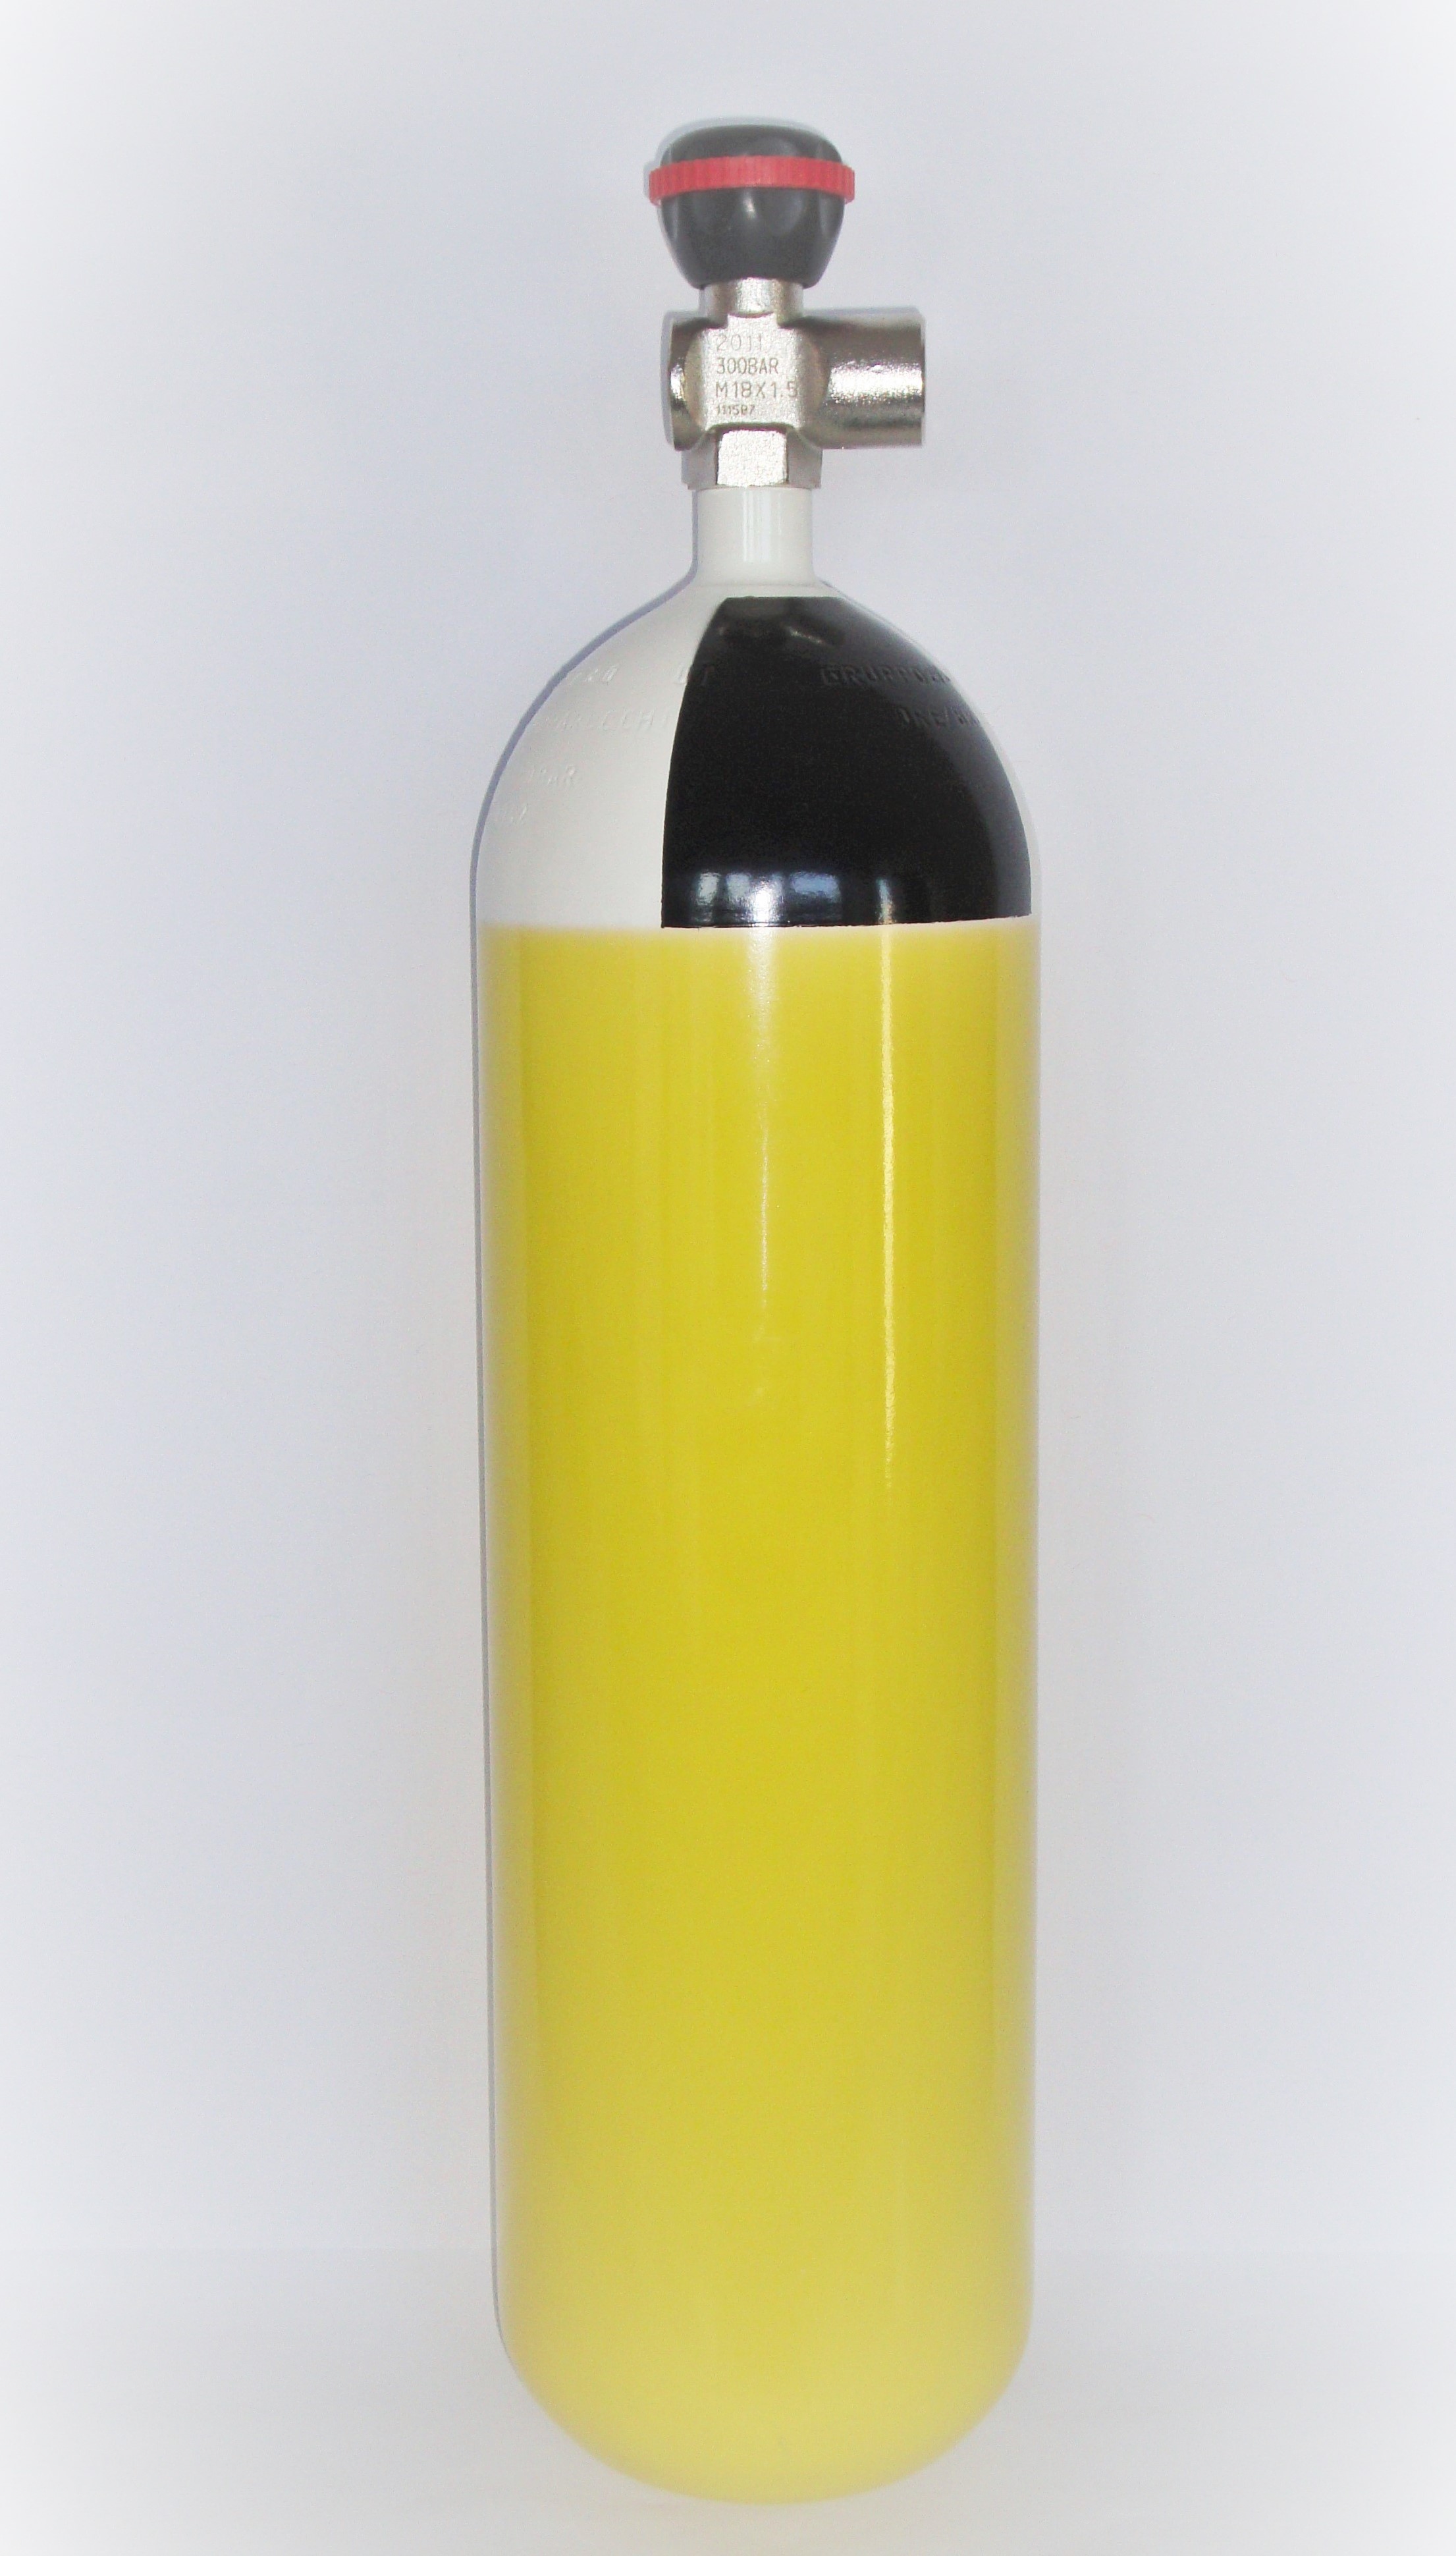 Druckluftflasche 300 bar (Stahl)